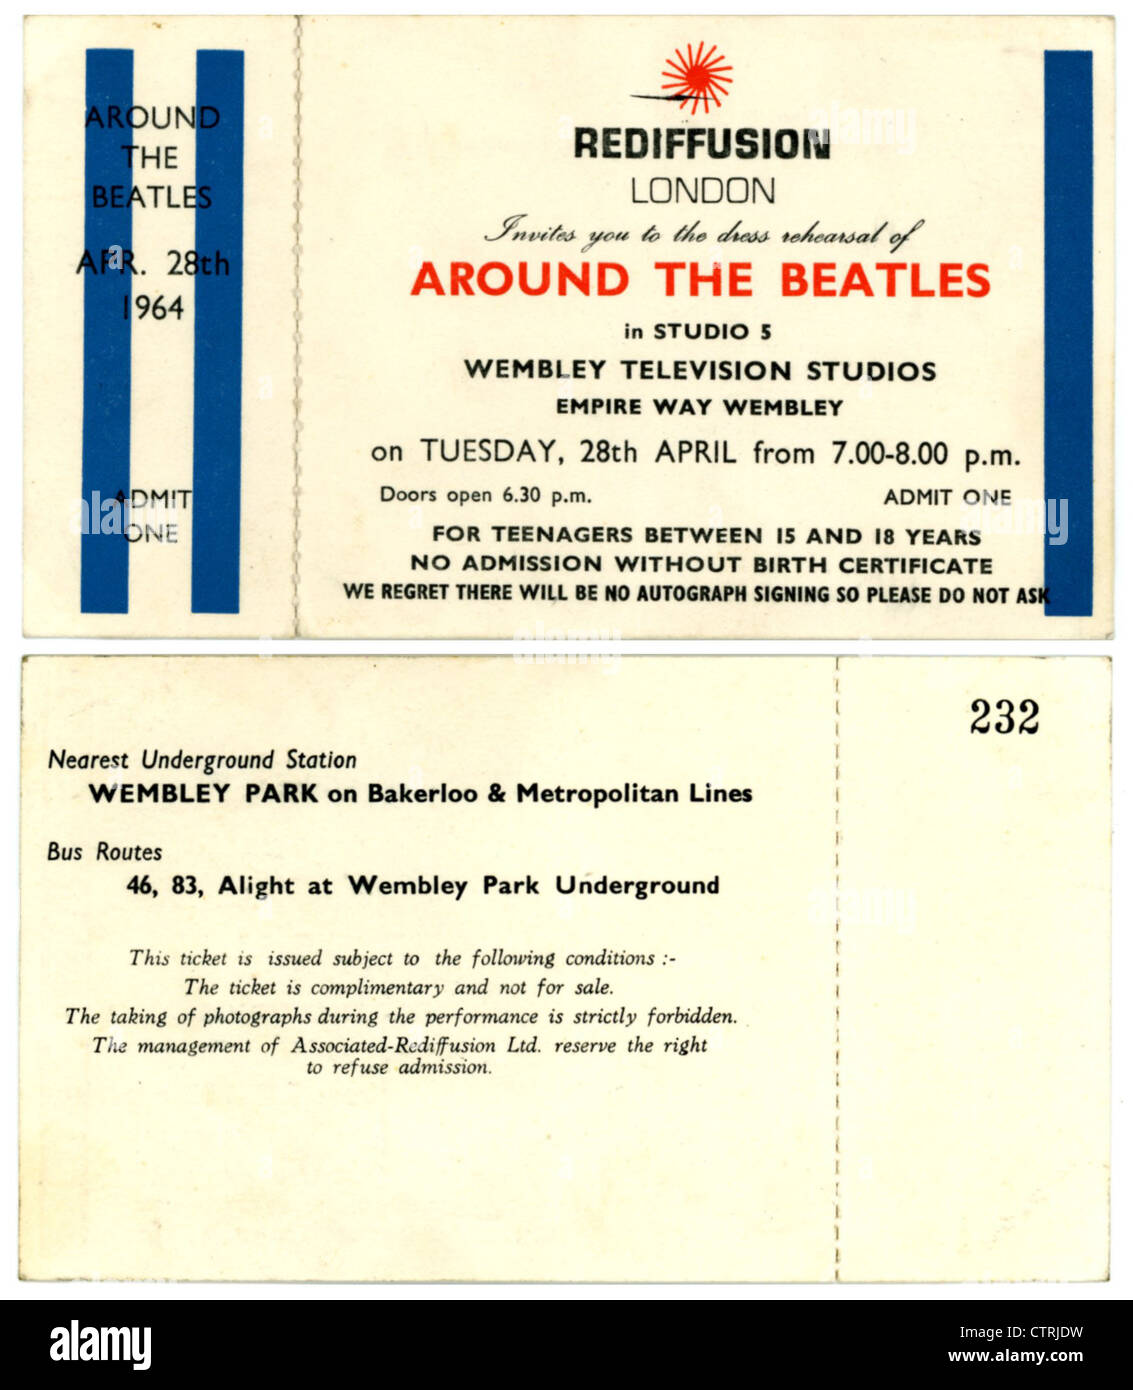 001002 - The Beatles Beatles associés autour de la rediffusion du billet de concert des studios de télévision de Wembley le 28 avril 1964 Banque D'Images